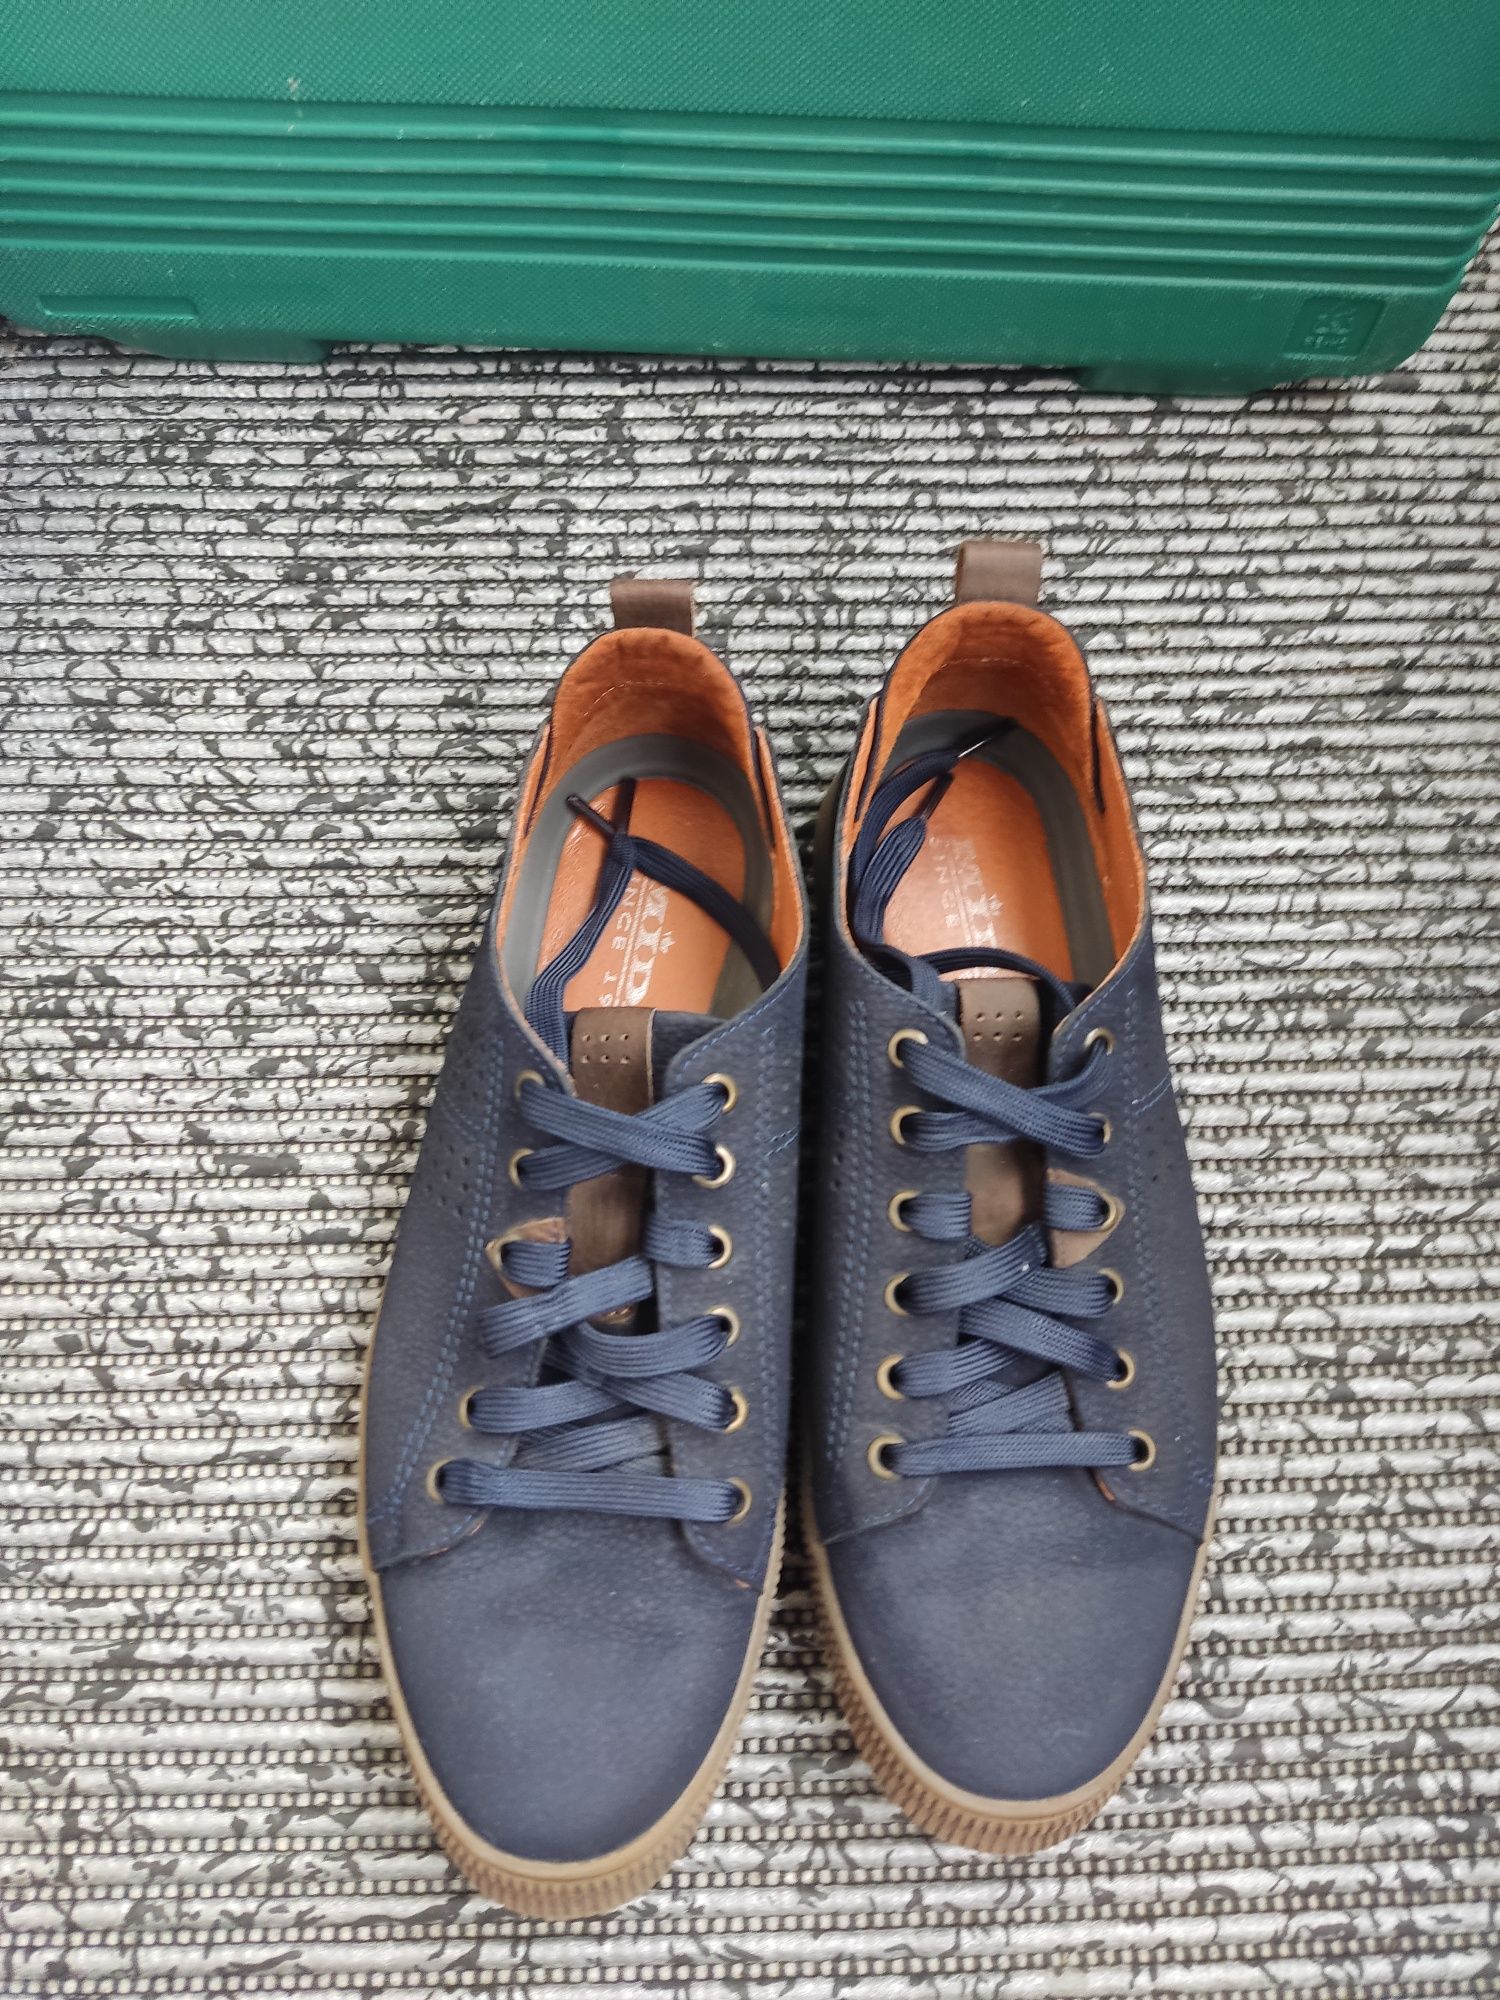 Обувь (Кроссовки мужские) Mida, 42 размер